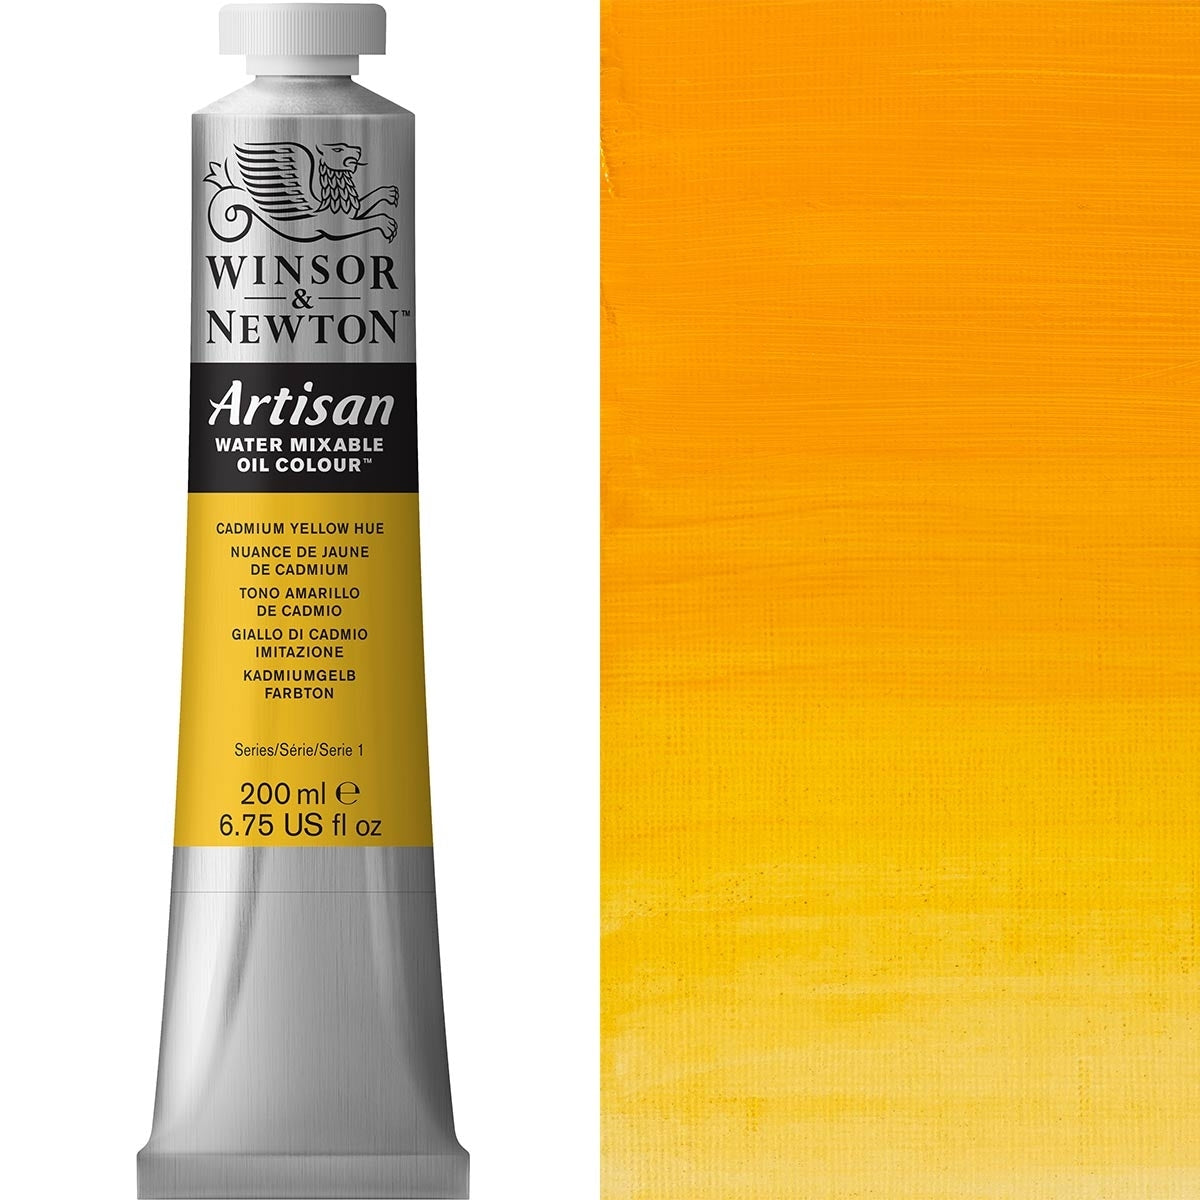 Winsor e Newton - Watermixable di colore olio artigianale - 200 ml - tonalità gialla cadmio